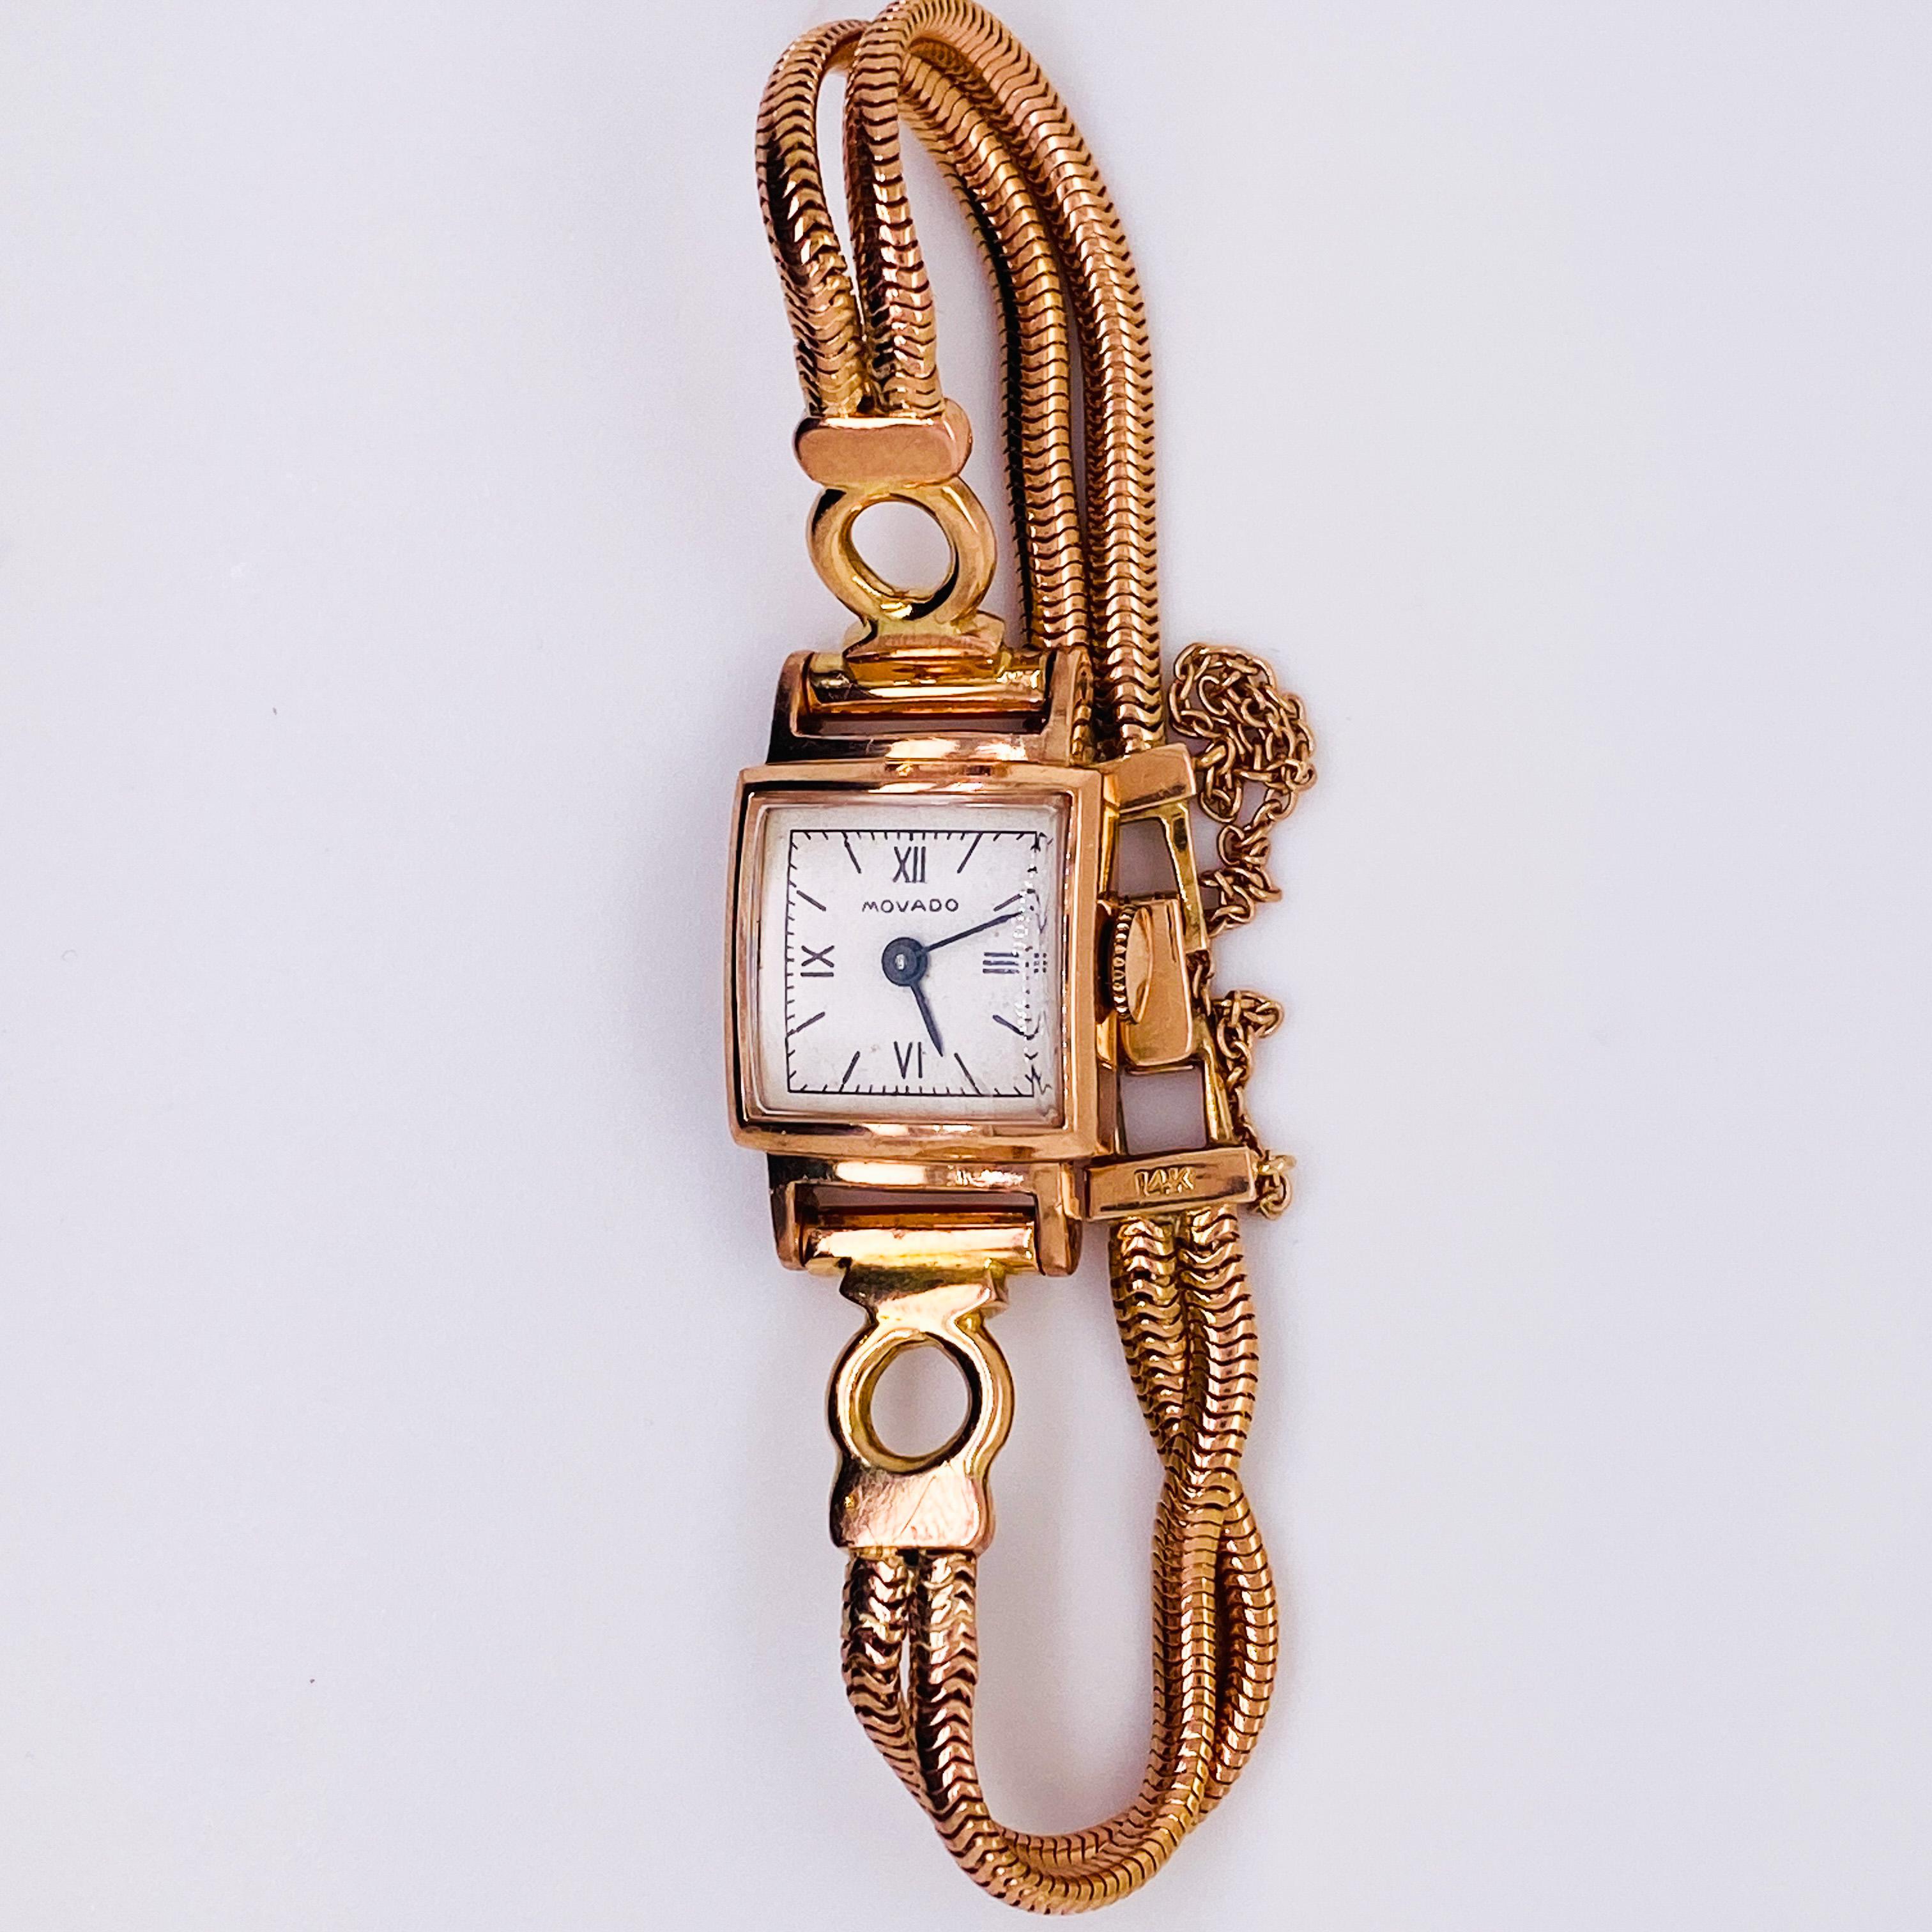 Movado stellt seit 1881 Uhren her und diese Vintage-Uhr ist CIRCA 1954. Das massive 14-karätige Roségold ist wunderschön und sehr retro. Das Band ist für ein schmales Handgelenk geeignet und wird mit einer Sicherheitskette aus 14 Karat Roségold